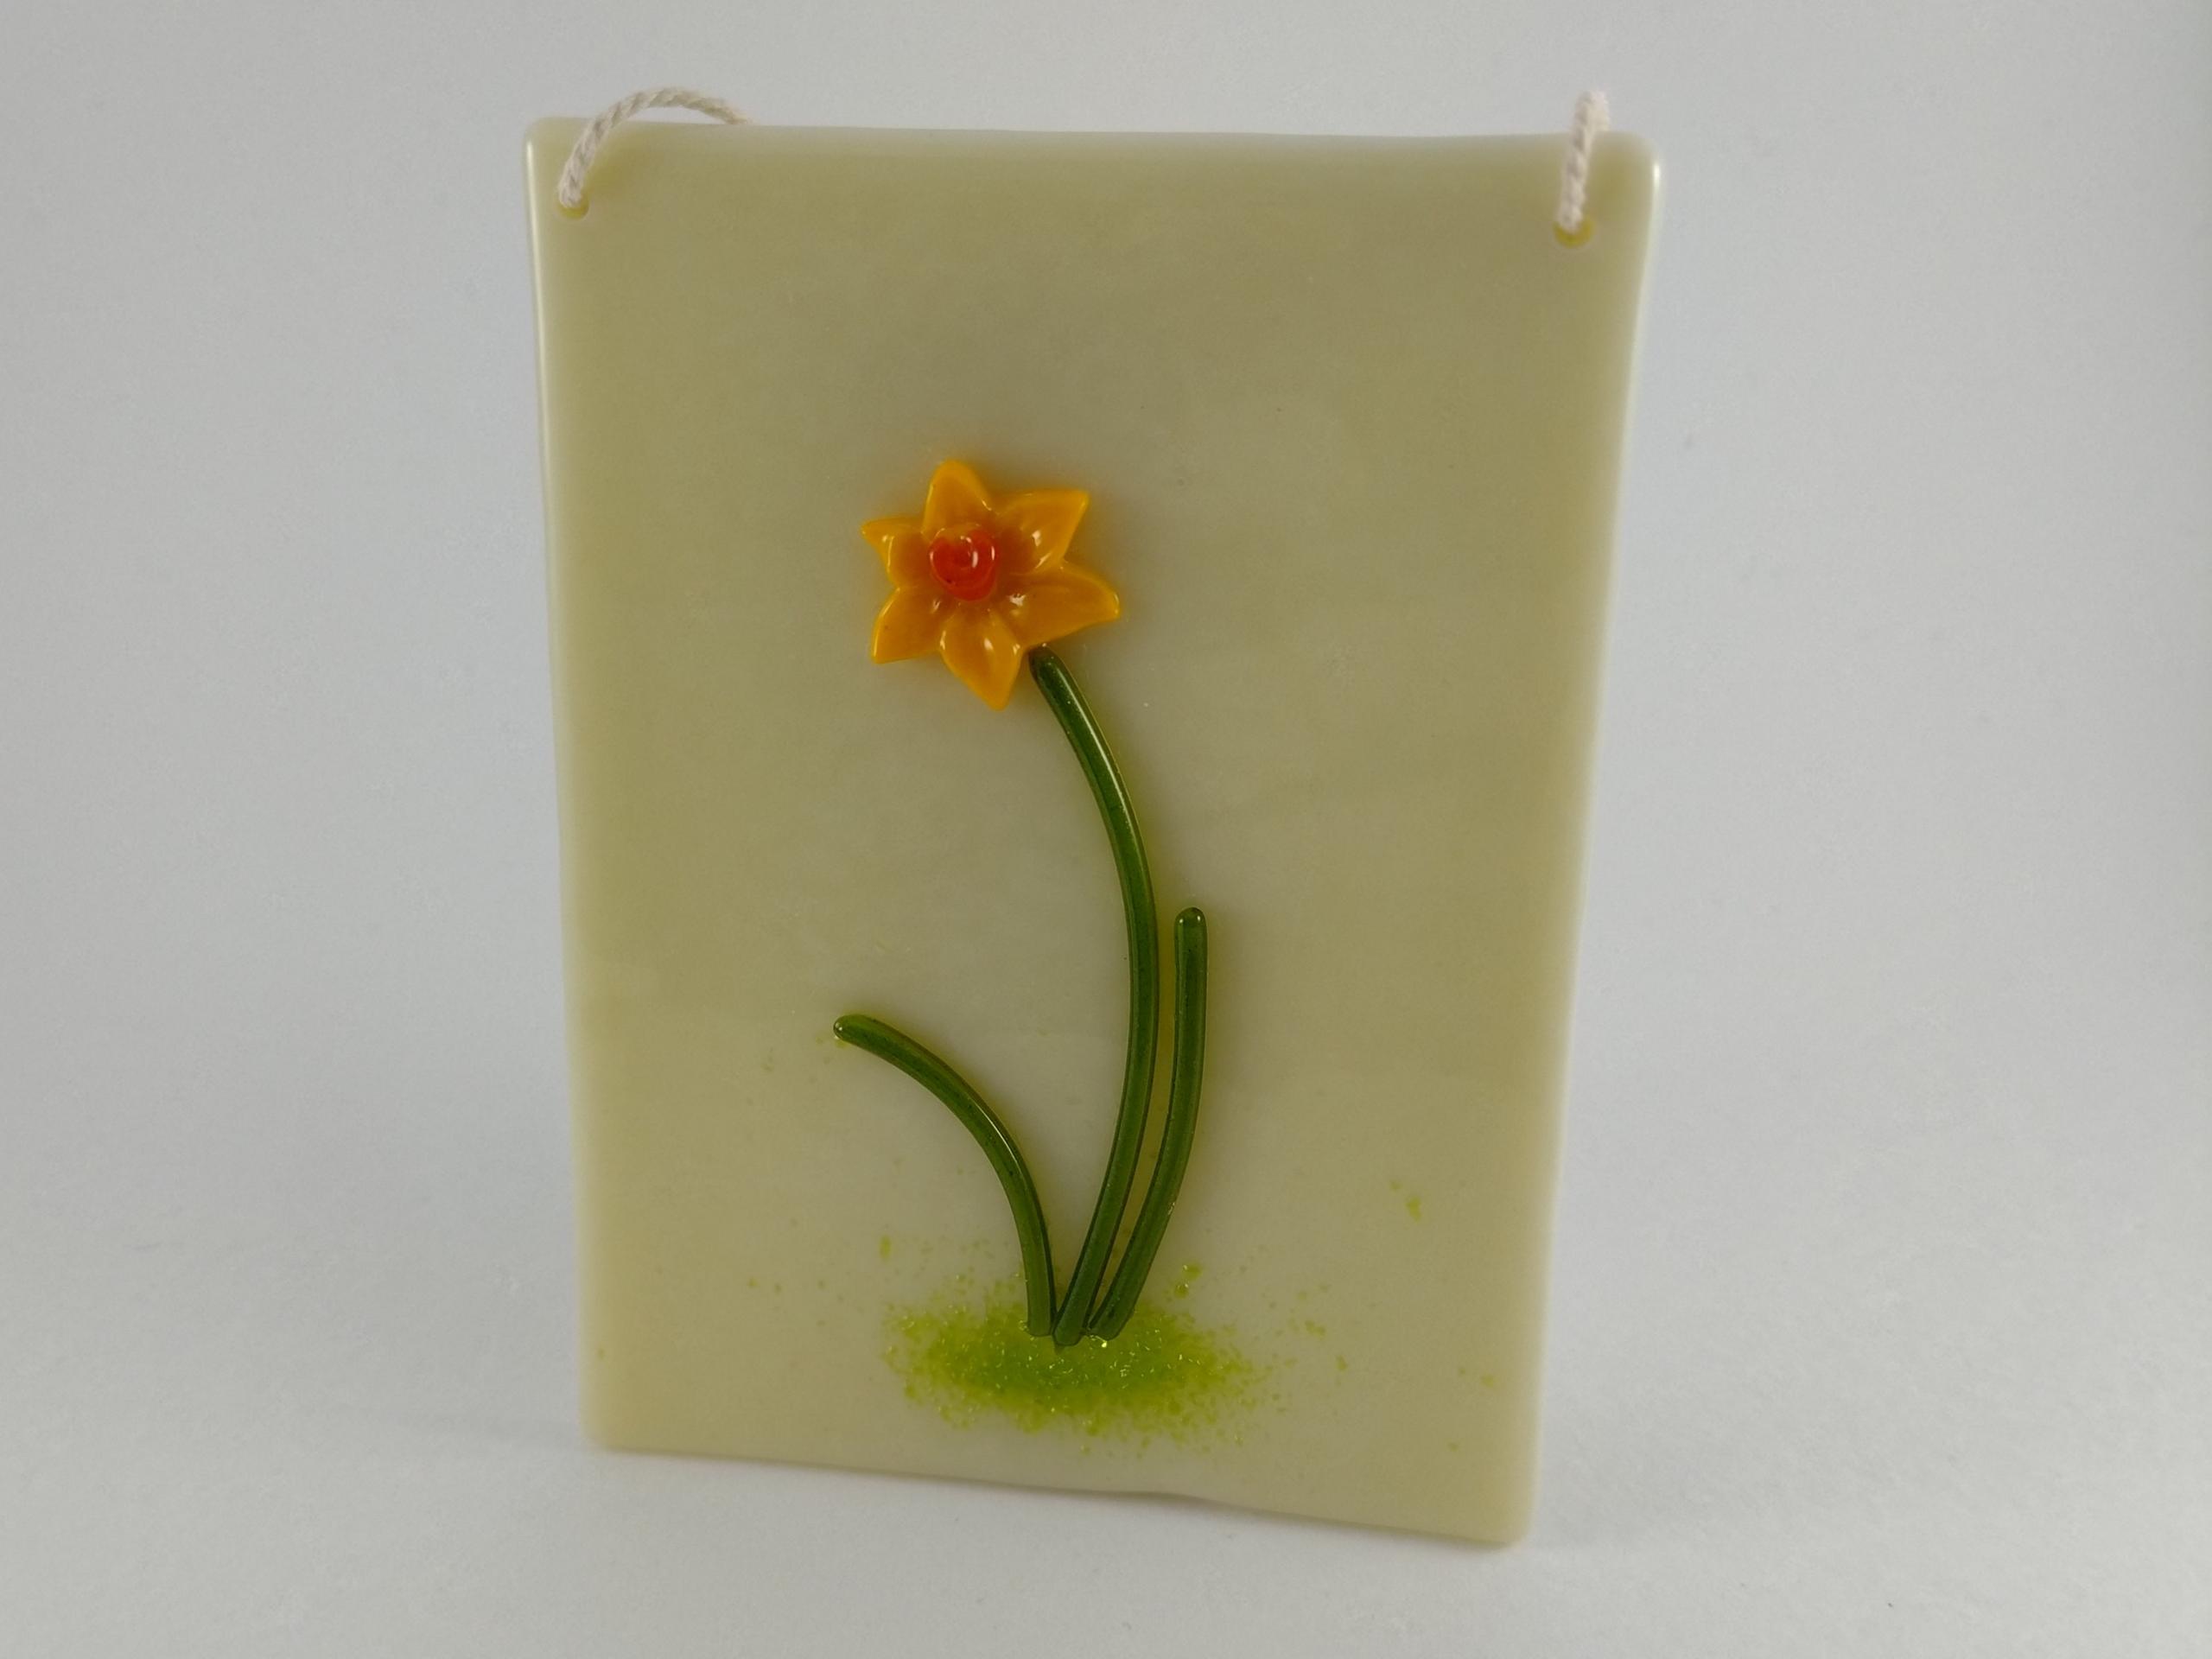 A joyful Spring Daffodil fused on vanilla opaque glass.